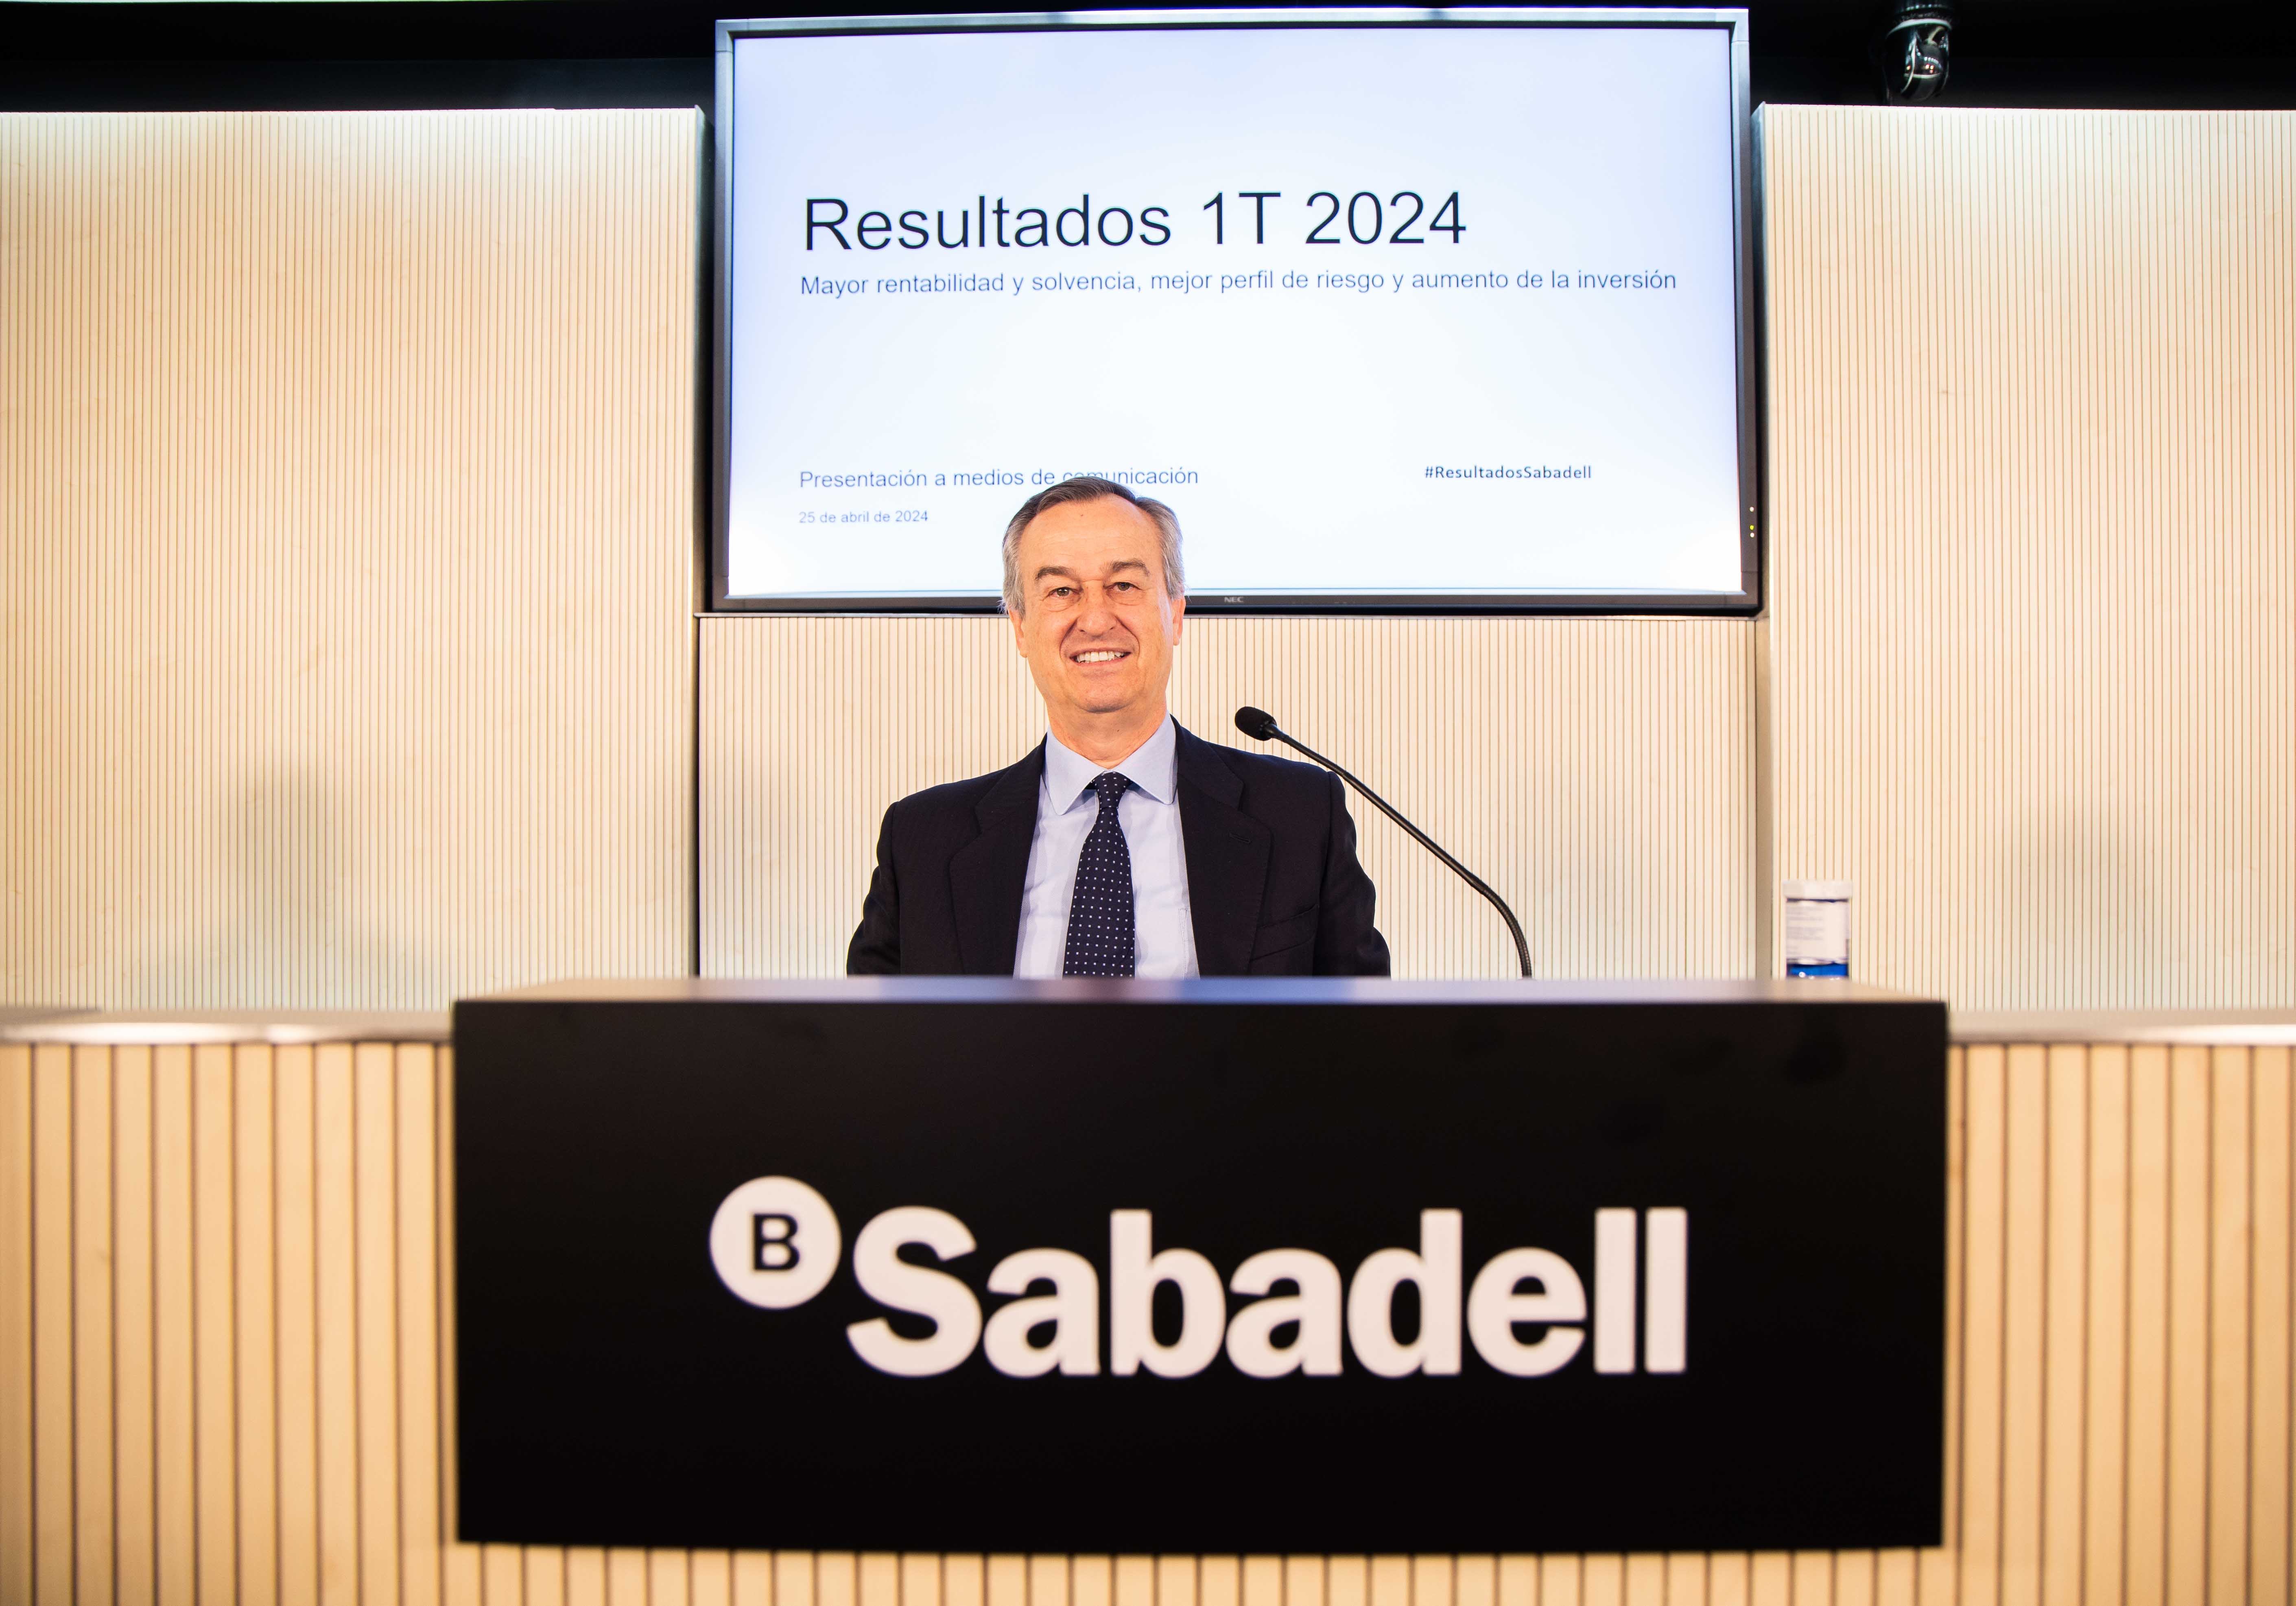 Sabadell fia su crecimiento en 2025 a Reino Unido: el resultado en España "va a decaer"